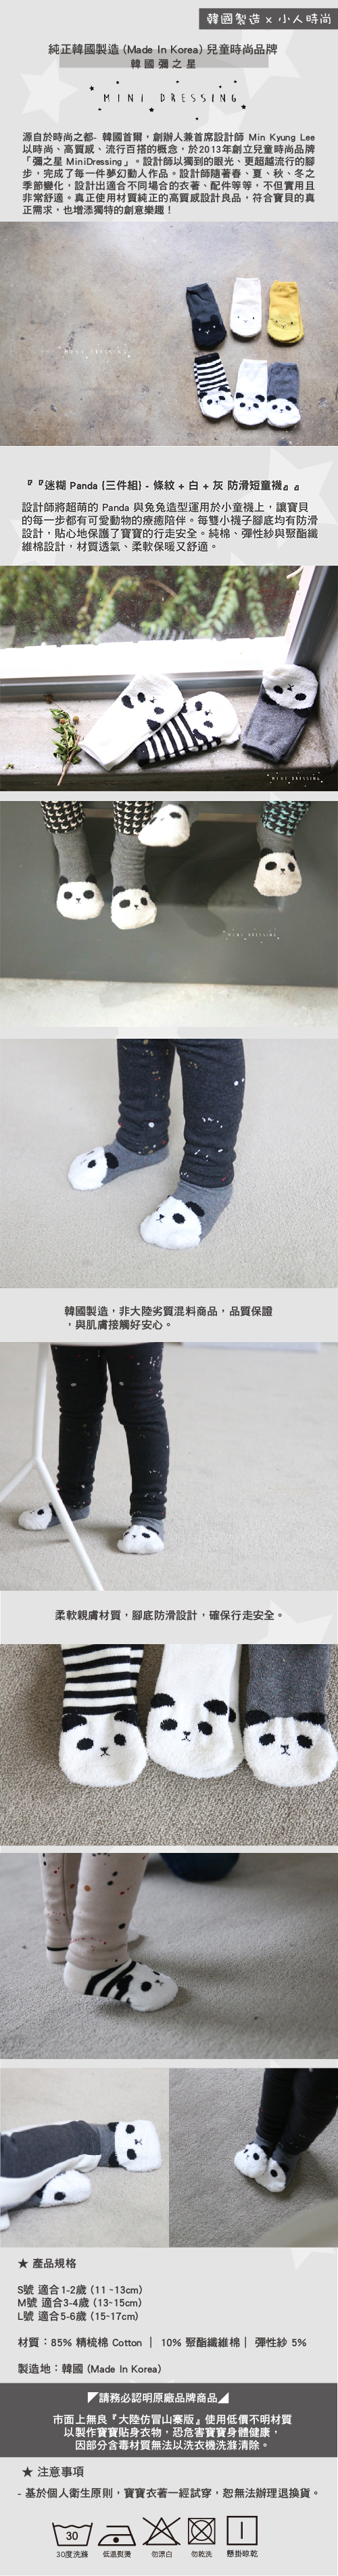 彌之星 MiniDressing 兒童彈性襪 / 止滑襪 / 童襪 / 短襪 三件組 迷糊PandaS